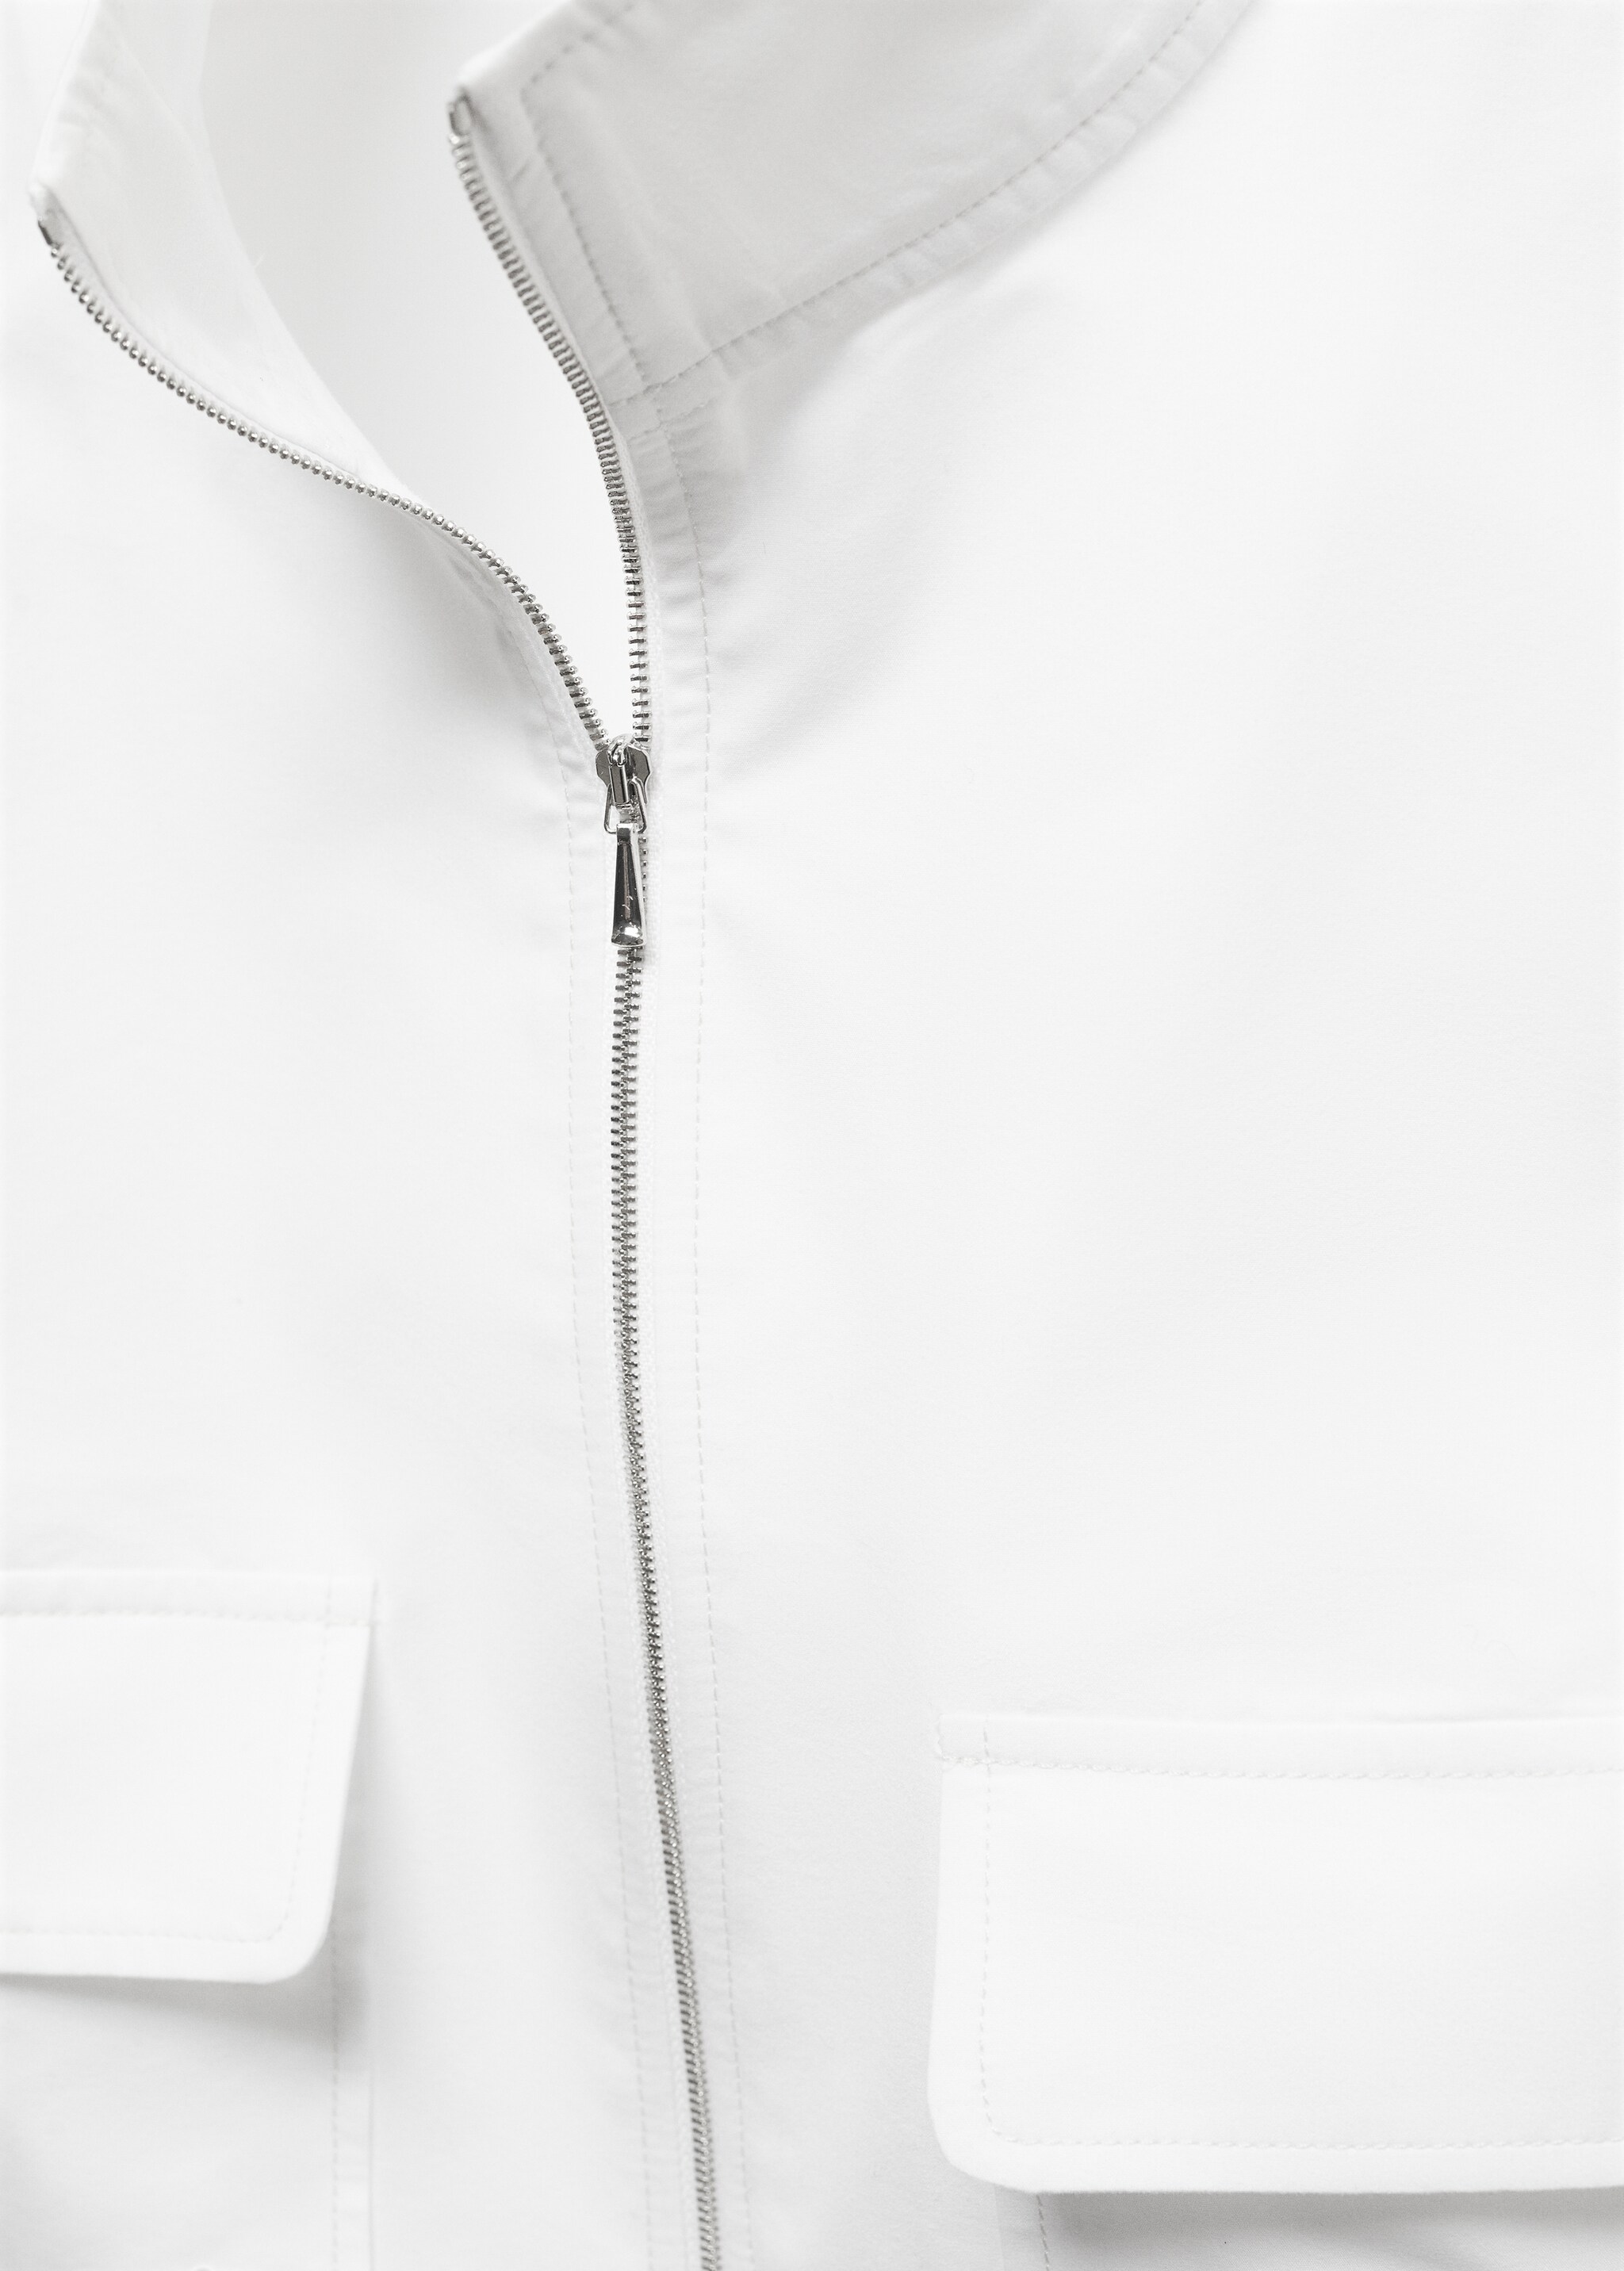 Cotton zipper sleeveless shirt - Details of the article 8